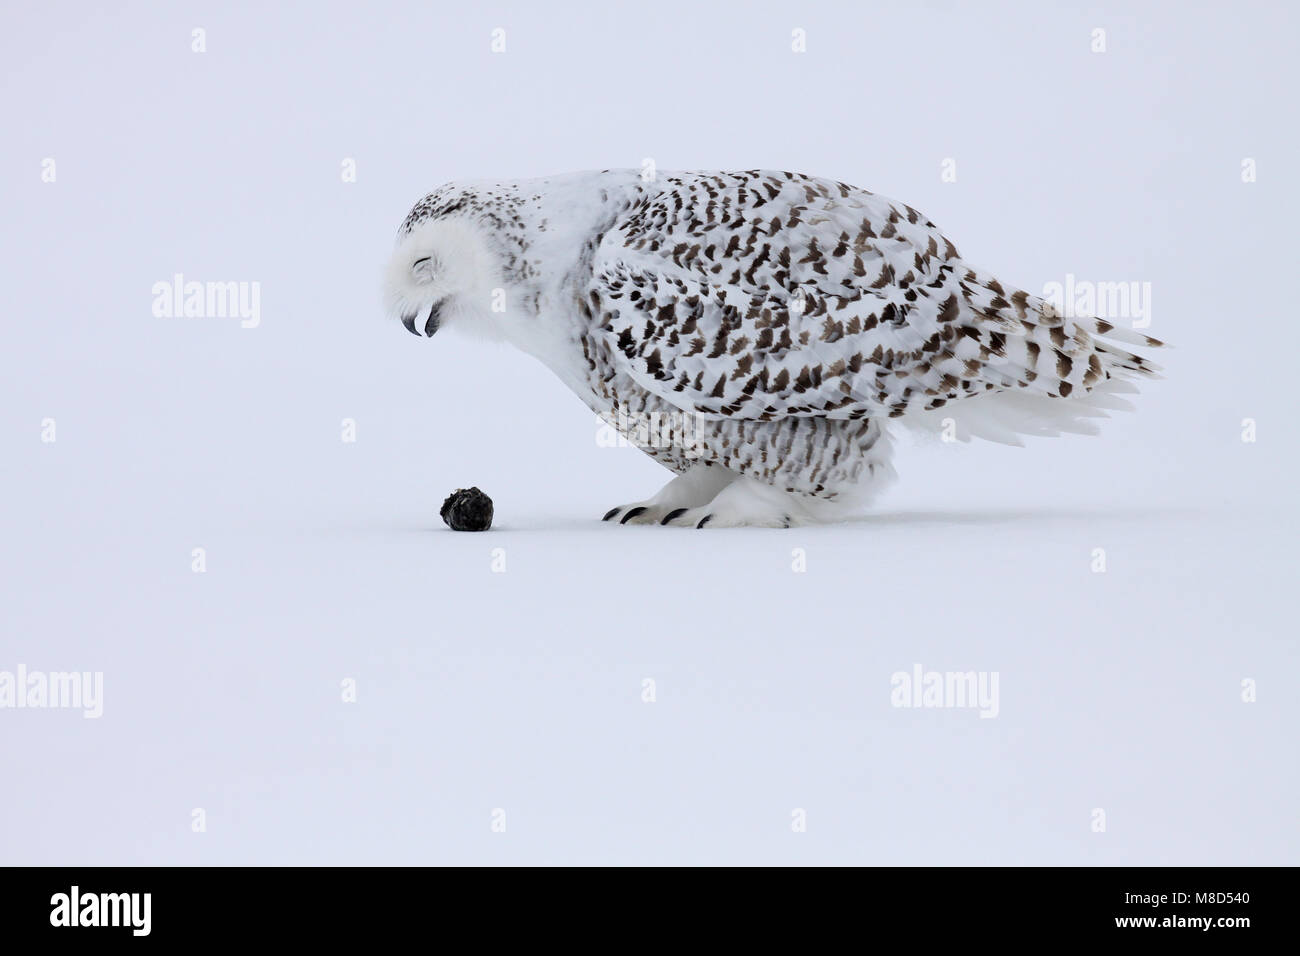 Sneeuwuil brakend een braakbal; Snowy Owl throwing up pellet Stock Photo